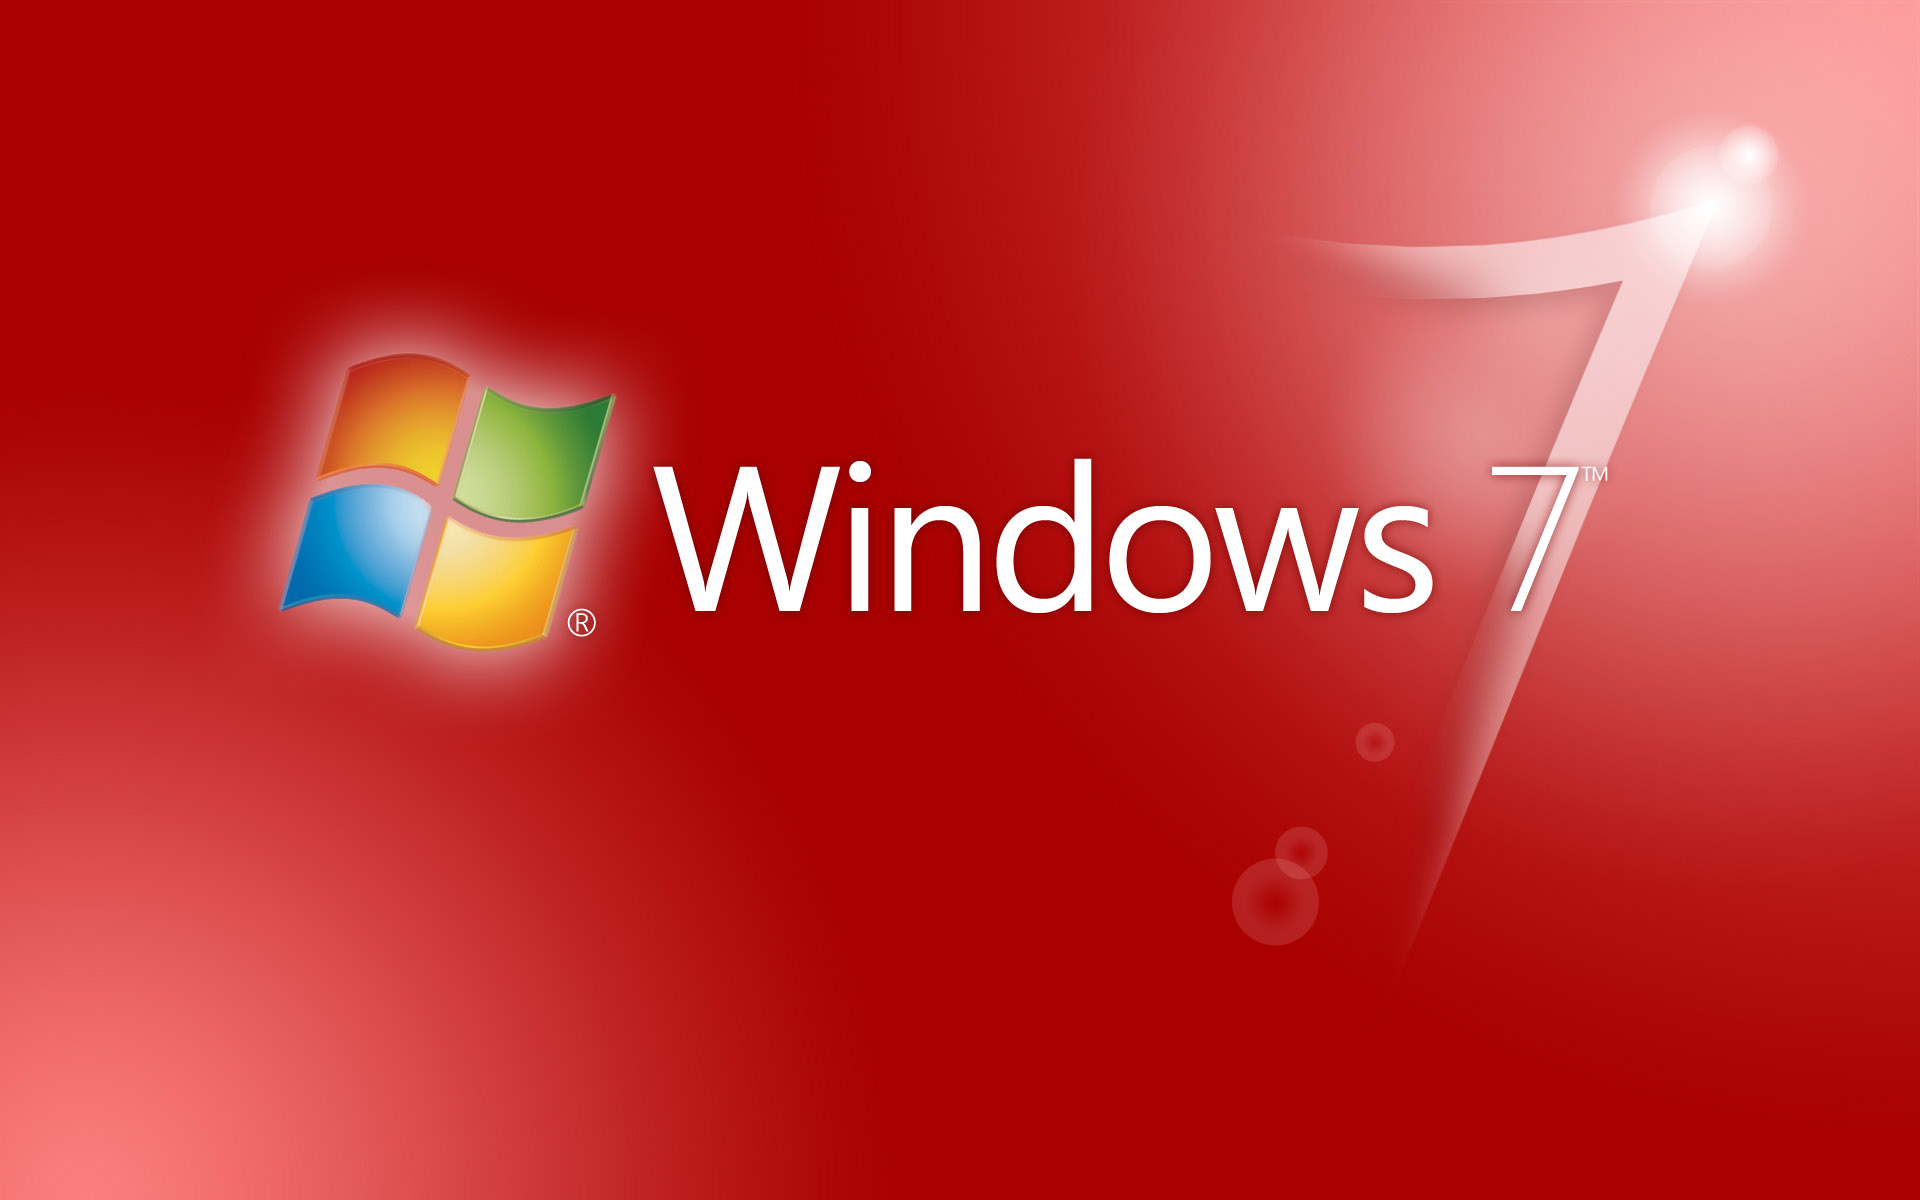 vijay sfondi hd per windows 7,testo,rosso,font,disegno grafico,sistema operativo